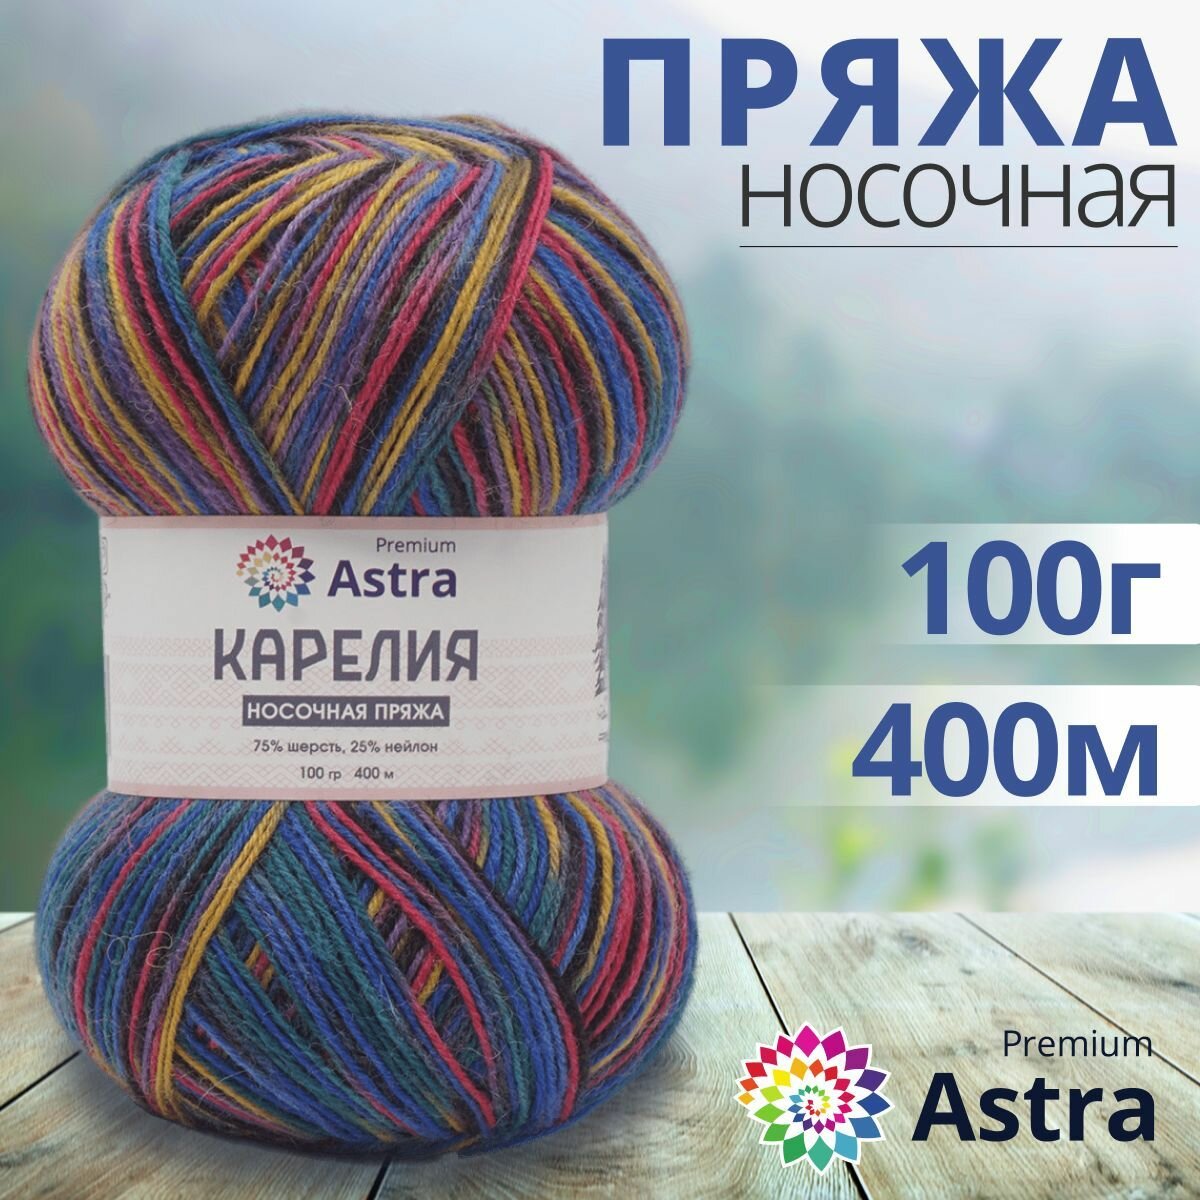 Пряжа для вязания Astra Premium 'Карелия' носочная (Karelia sock), 100г, 400м (75% шерсть, 25% нейлон) (1002), 2 мотка